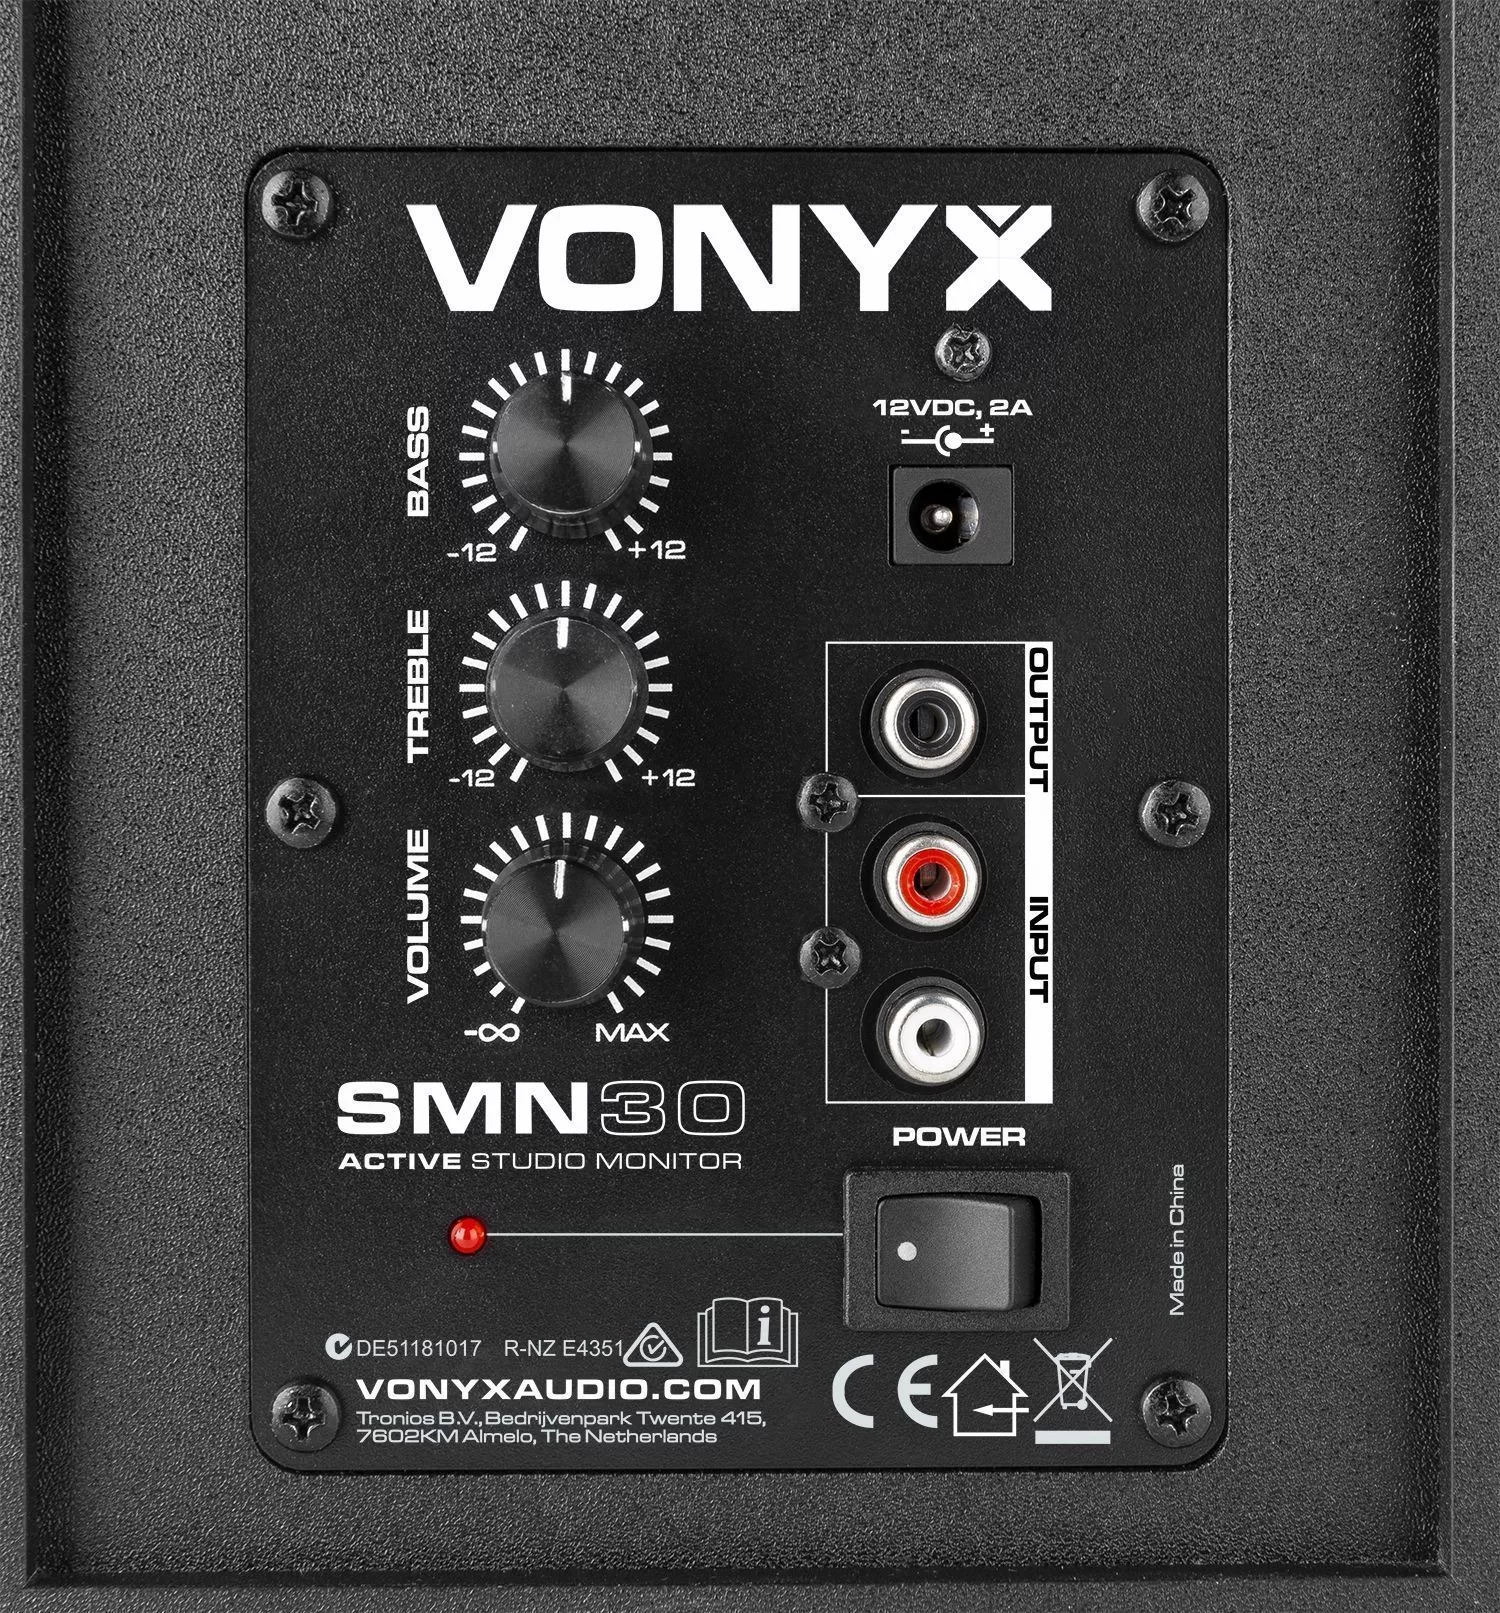 Vonyx retourdeals studio monitors|studio monitors